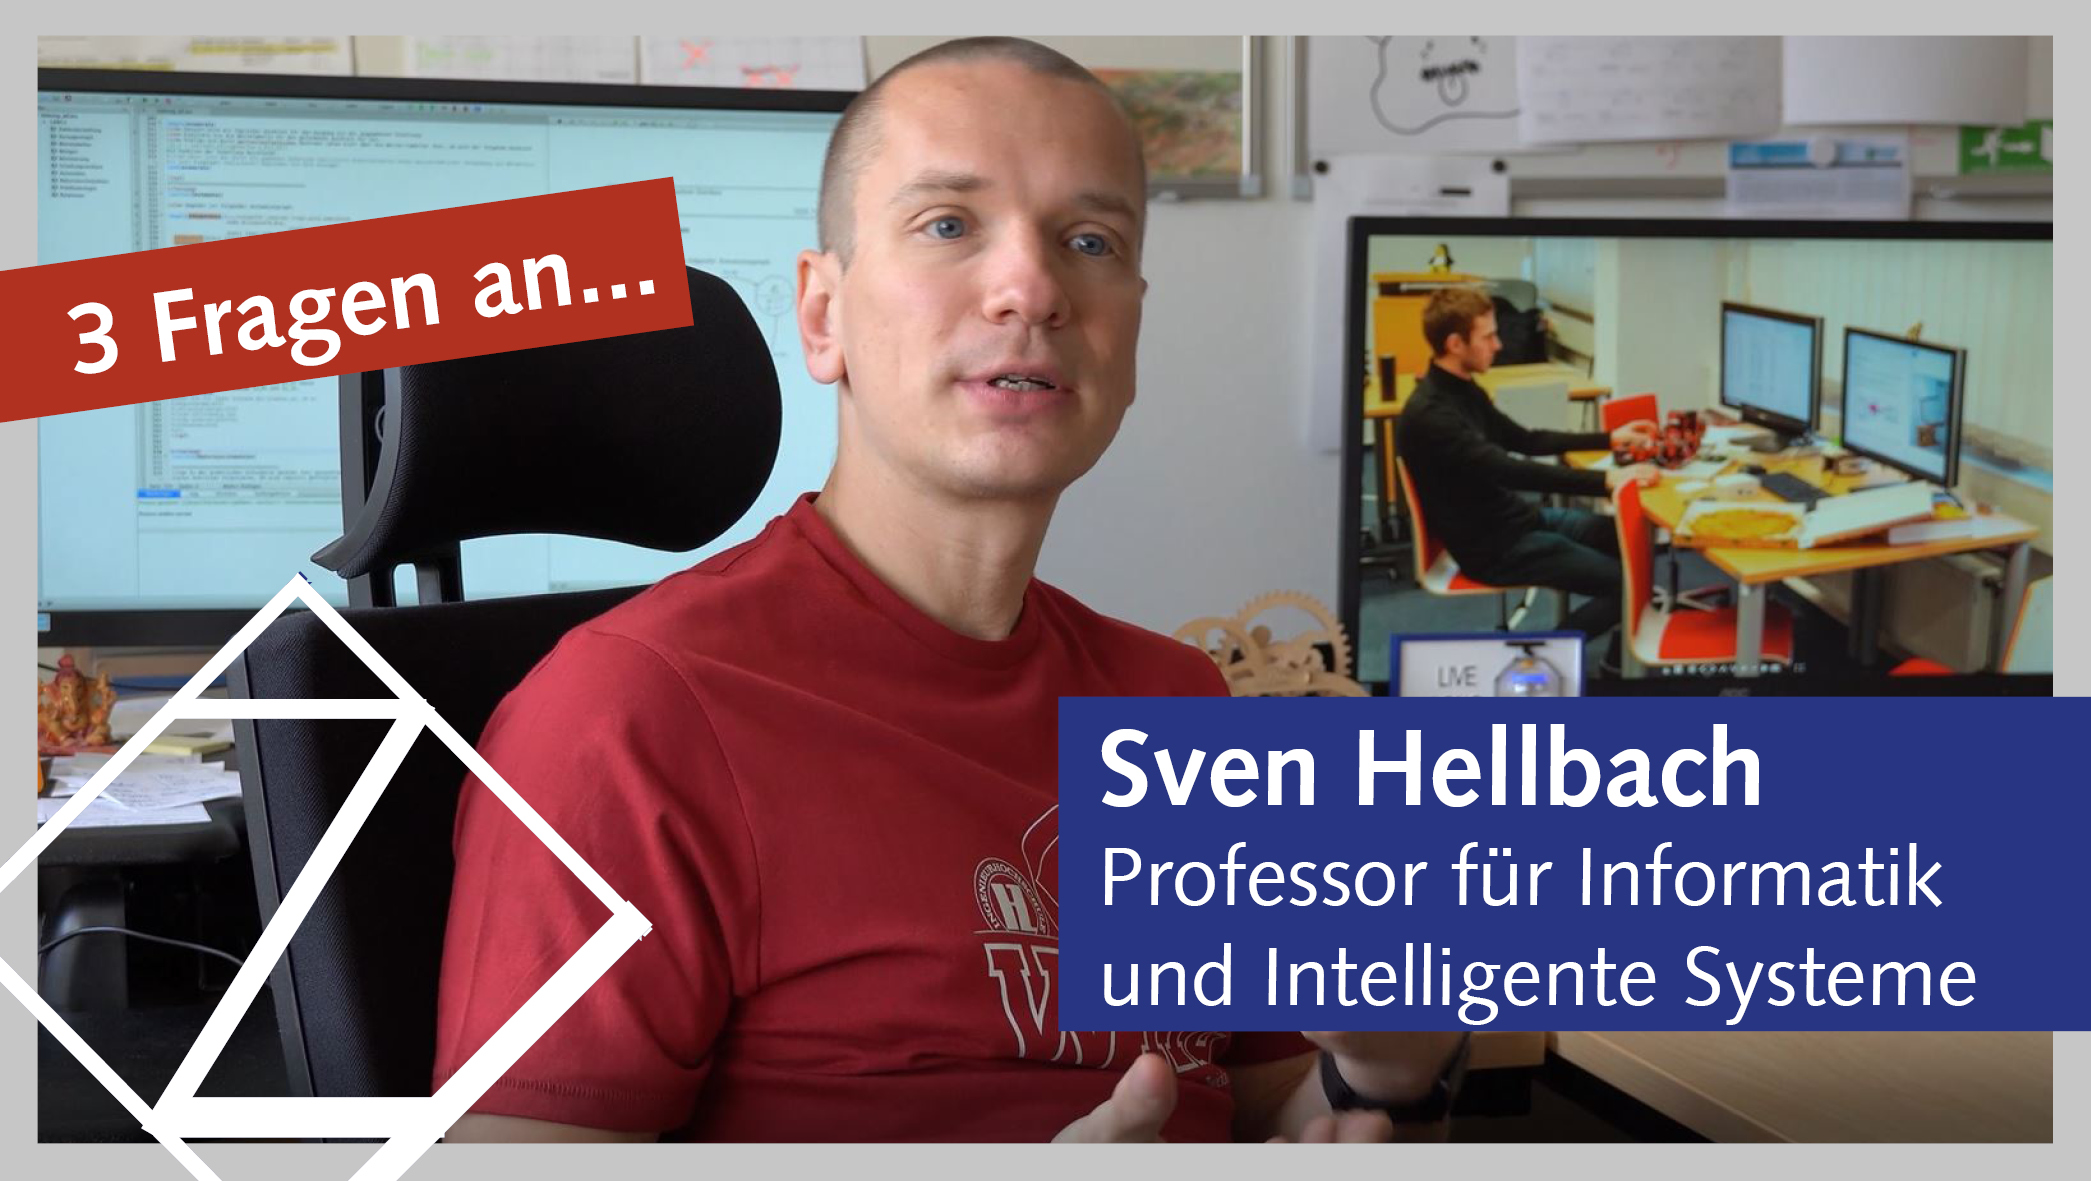 Professor Sven Hellbach im Büro. Er trägt ein rotes Hochschul-T-Shirt. Sein Name ist eingeblendet. 